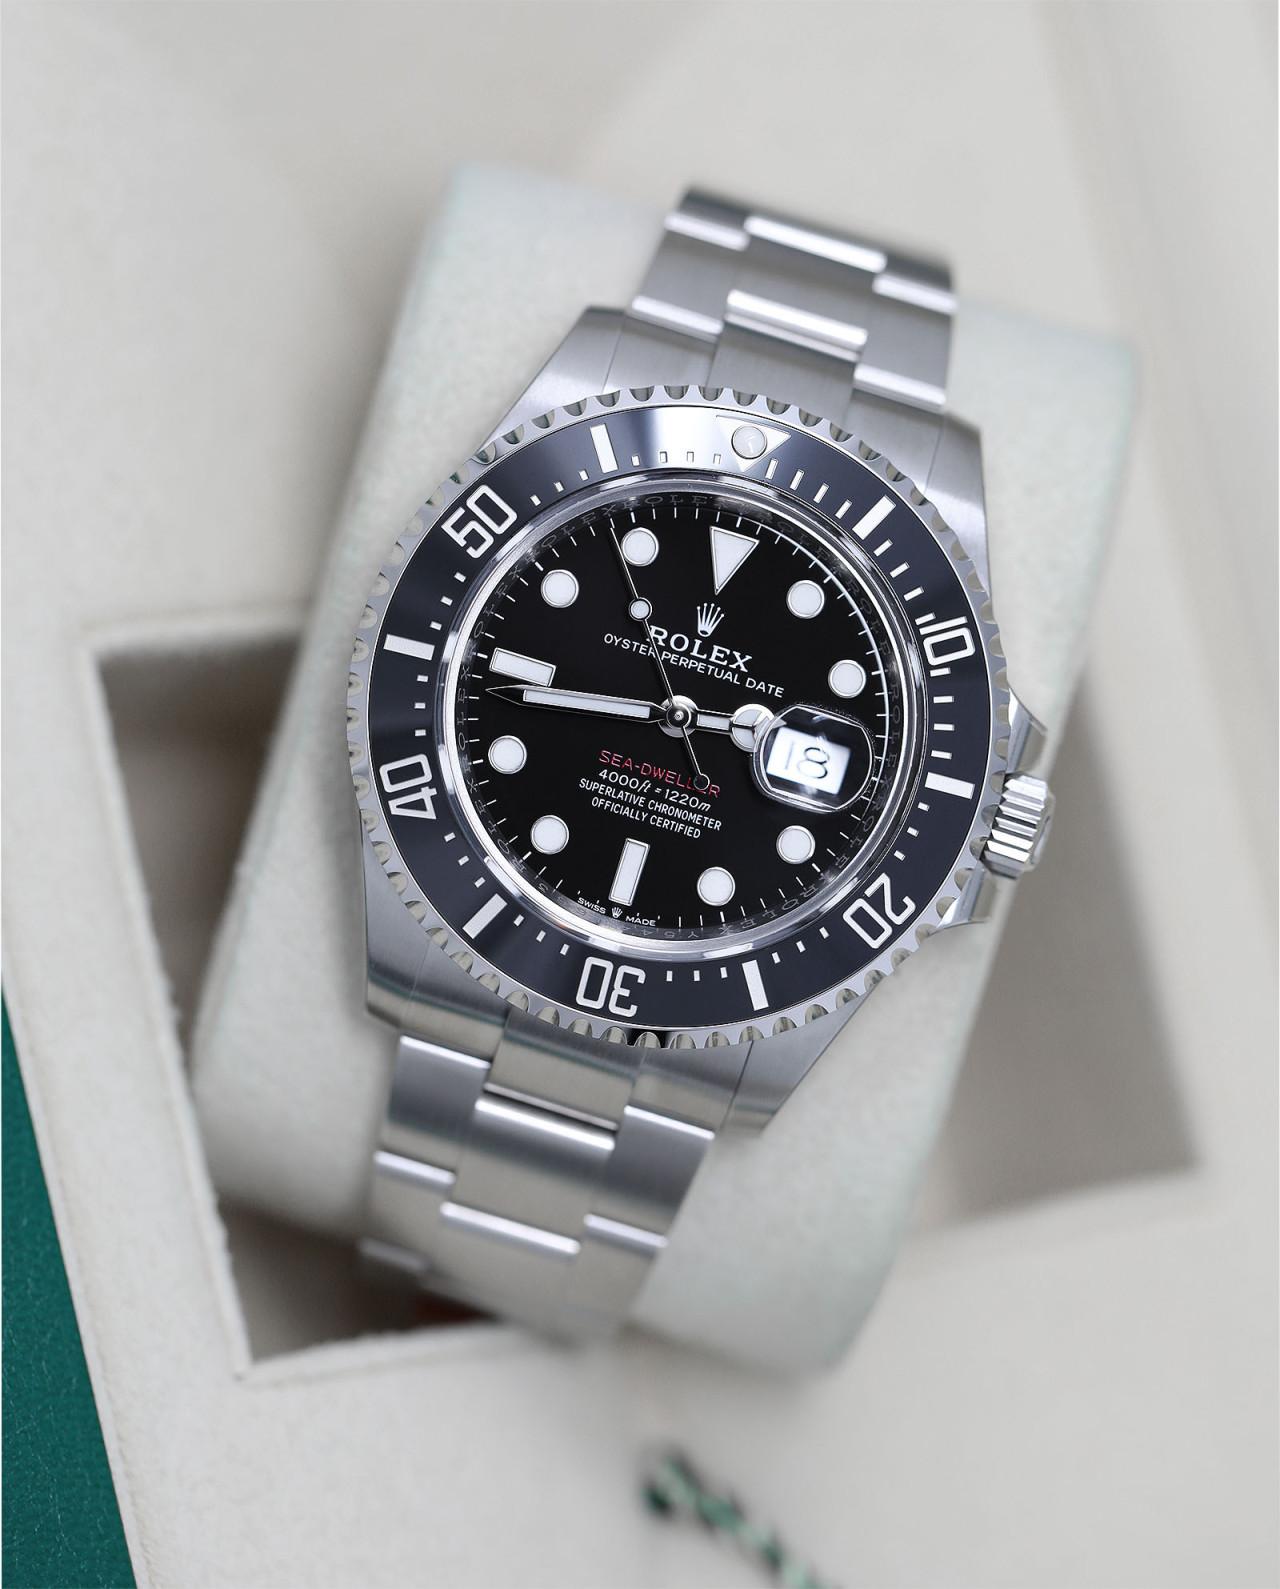 Rolex Sea-Dweller 43mm Edelstahl Uhr schwarzes Zifferblatt 126600 

Wir sind ein führender Händler von gebrauchten und neuen Uhren, wobei wir für alle unsere Zeitmesser vollständige Authentizität und entsprechende Ästhetik garantieren. Wir